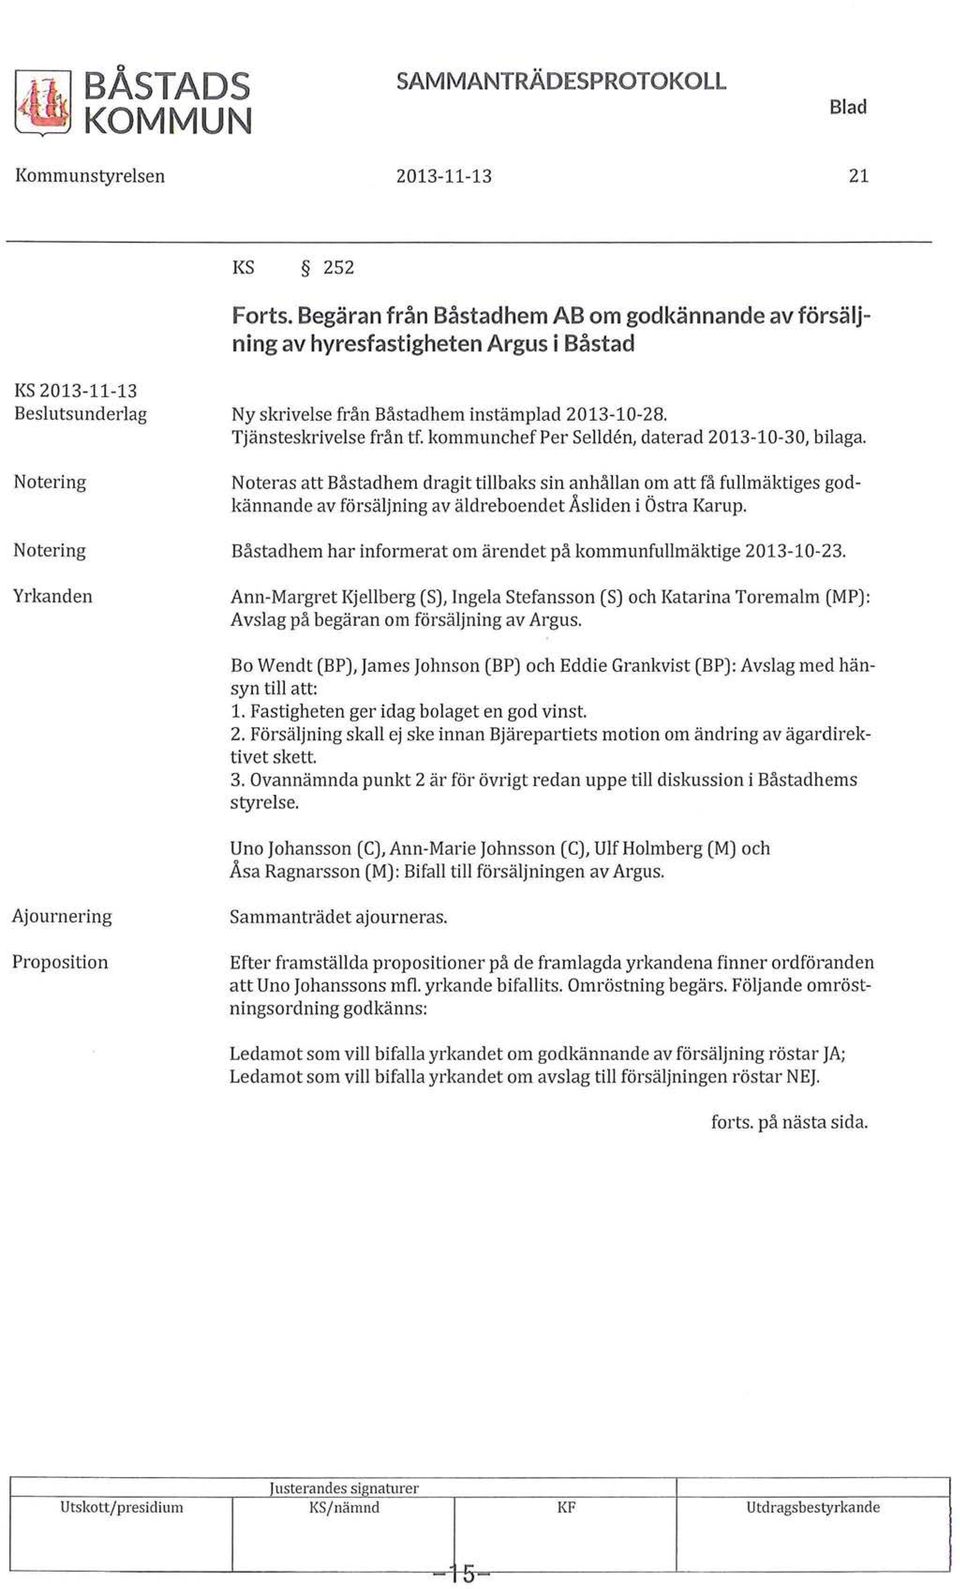 Tjänsteskrivelse från tf. kommunchef Per Sellden, daterad 2013-10-30, bilaga.